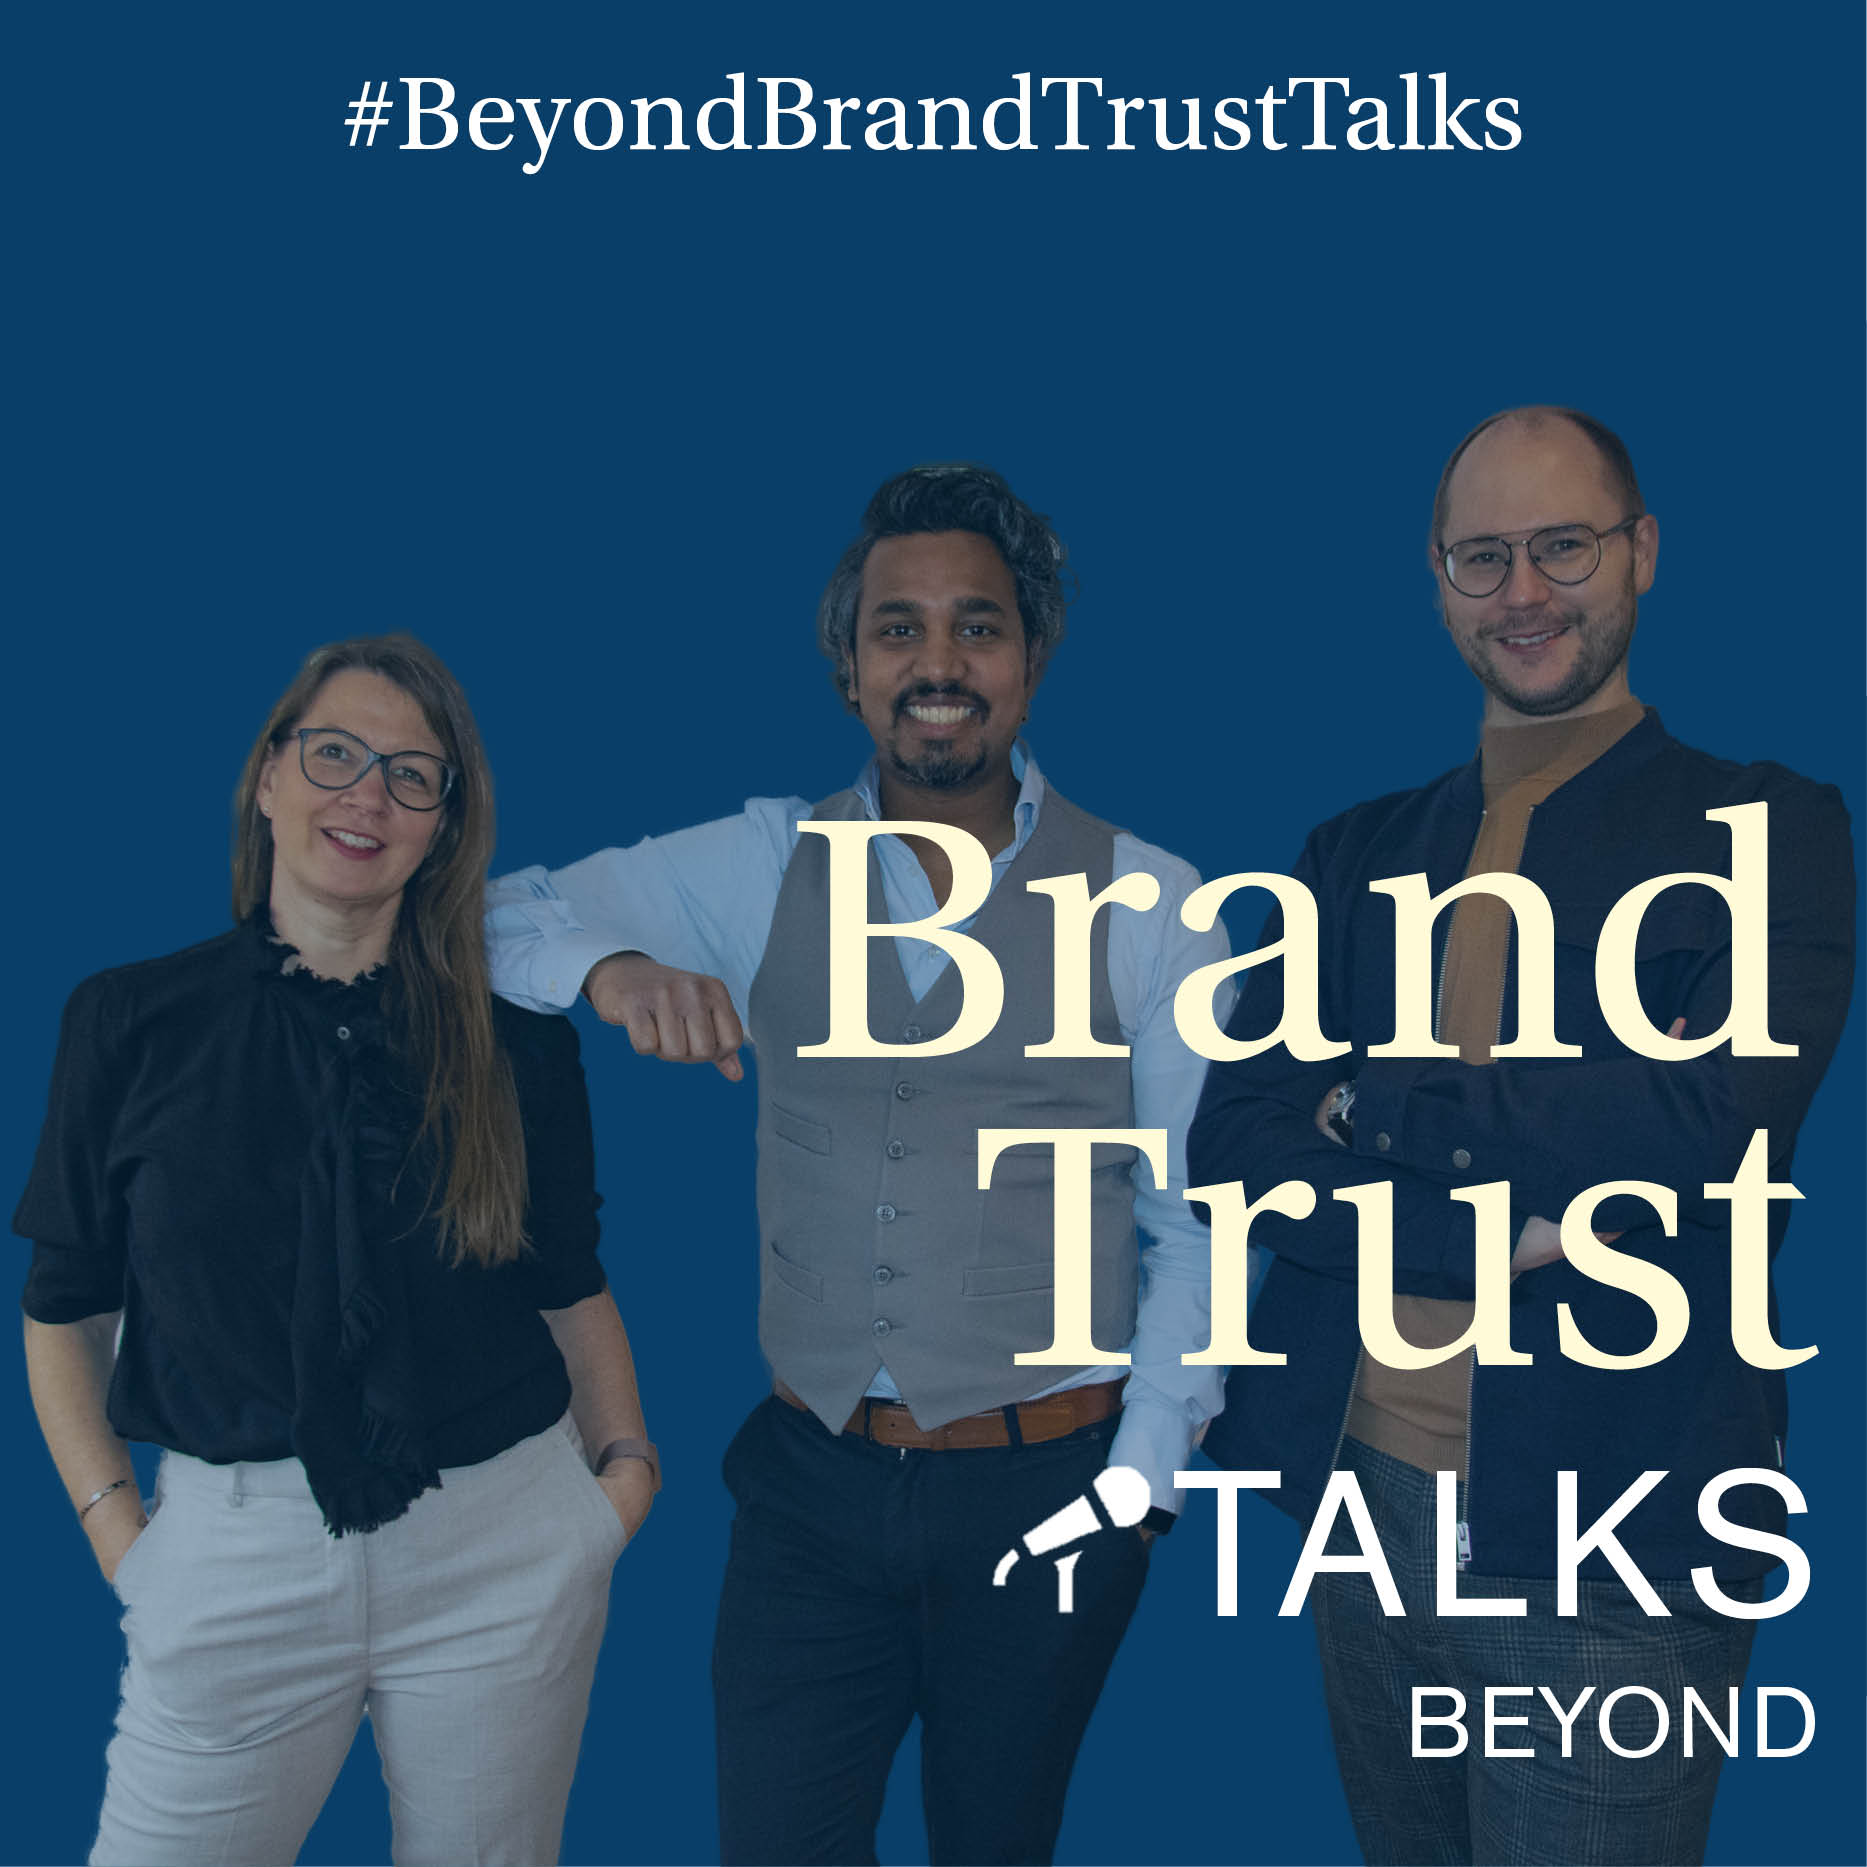 #beyondbrandtrusttalks mit Alexandra, Colin und Philipp - Jubiläumsfolge zu 2 Jahren BrandTrust Talks Beyond